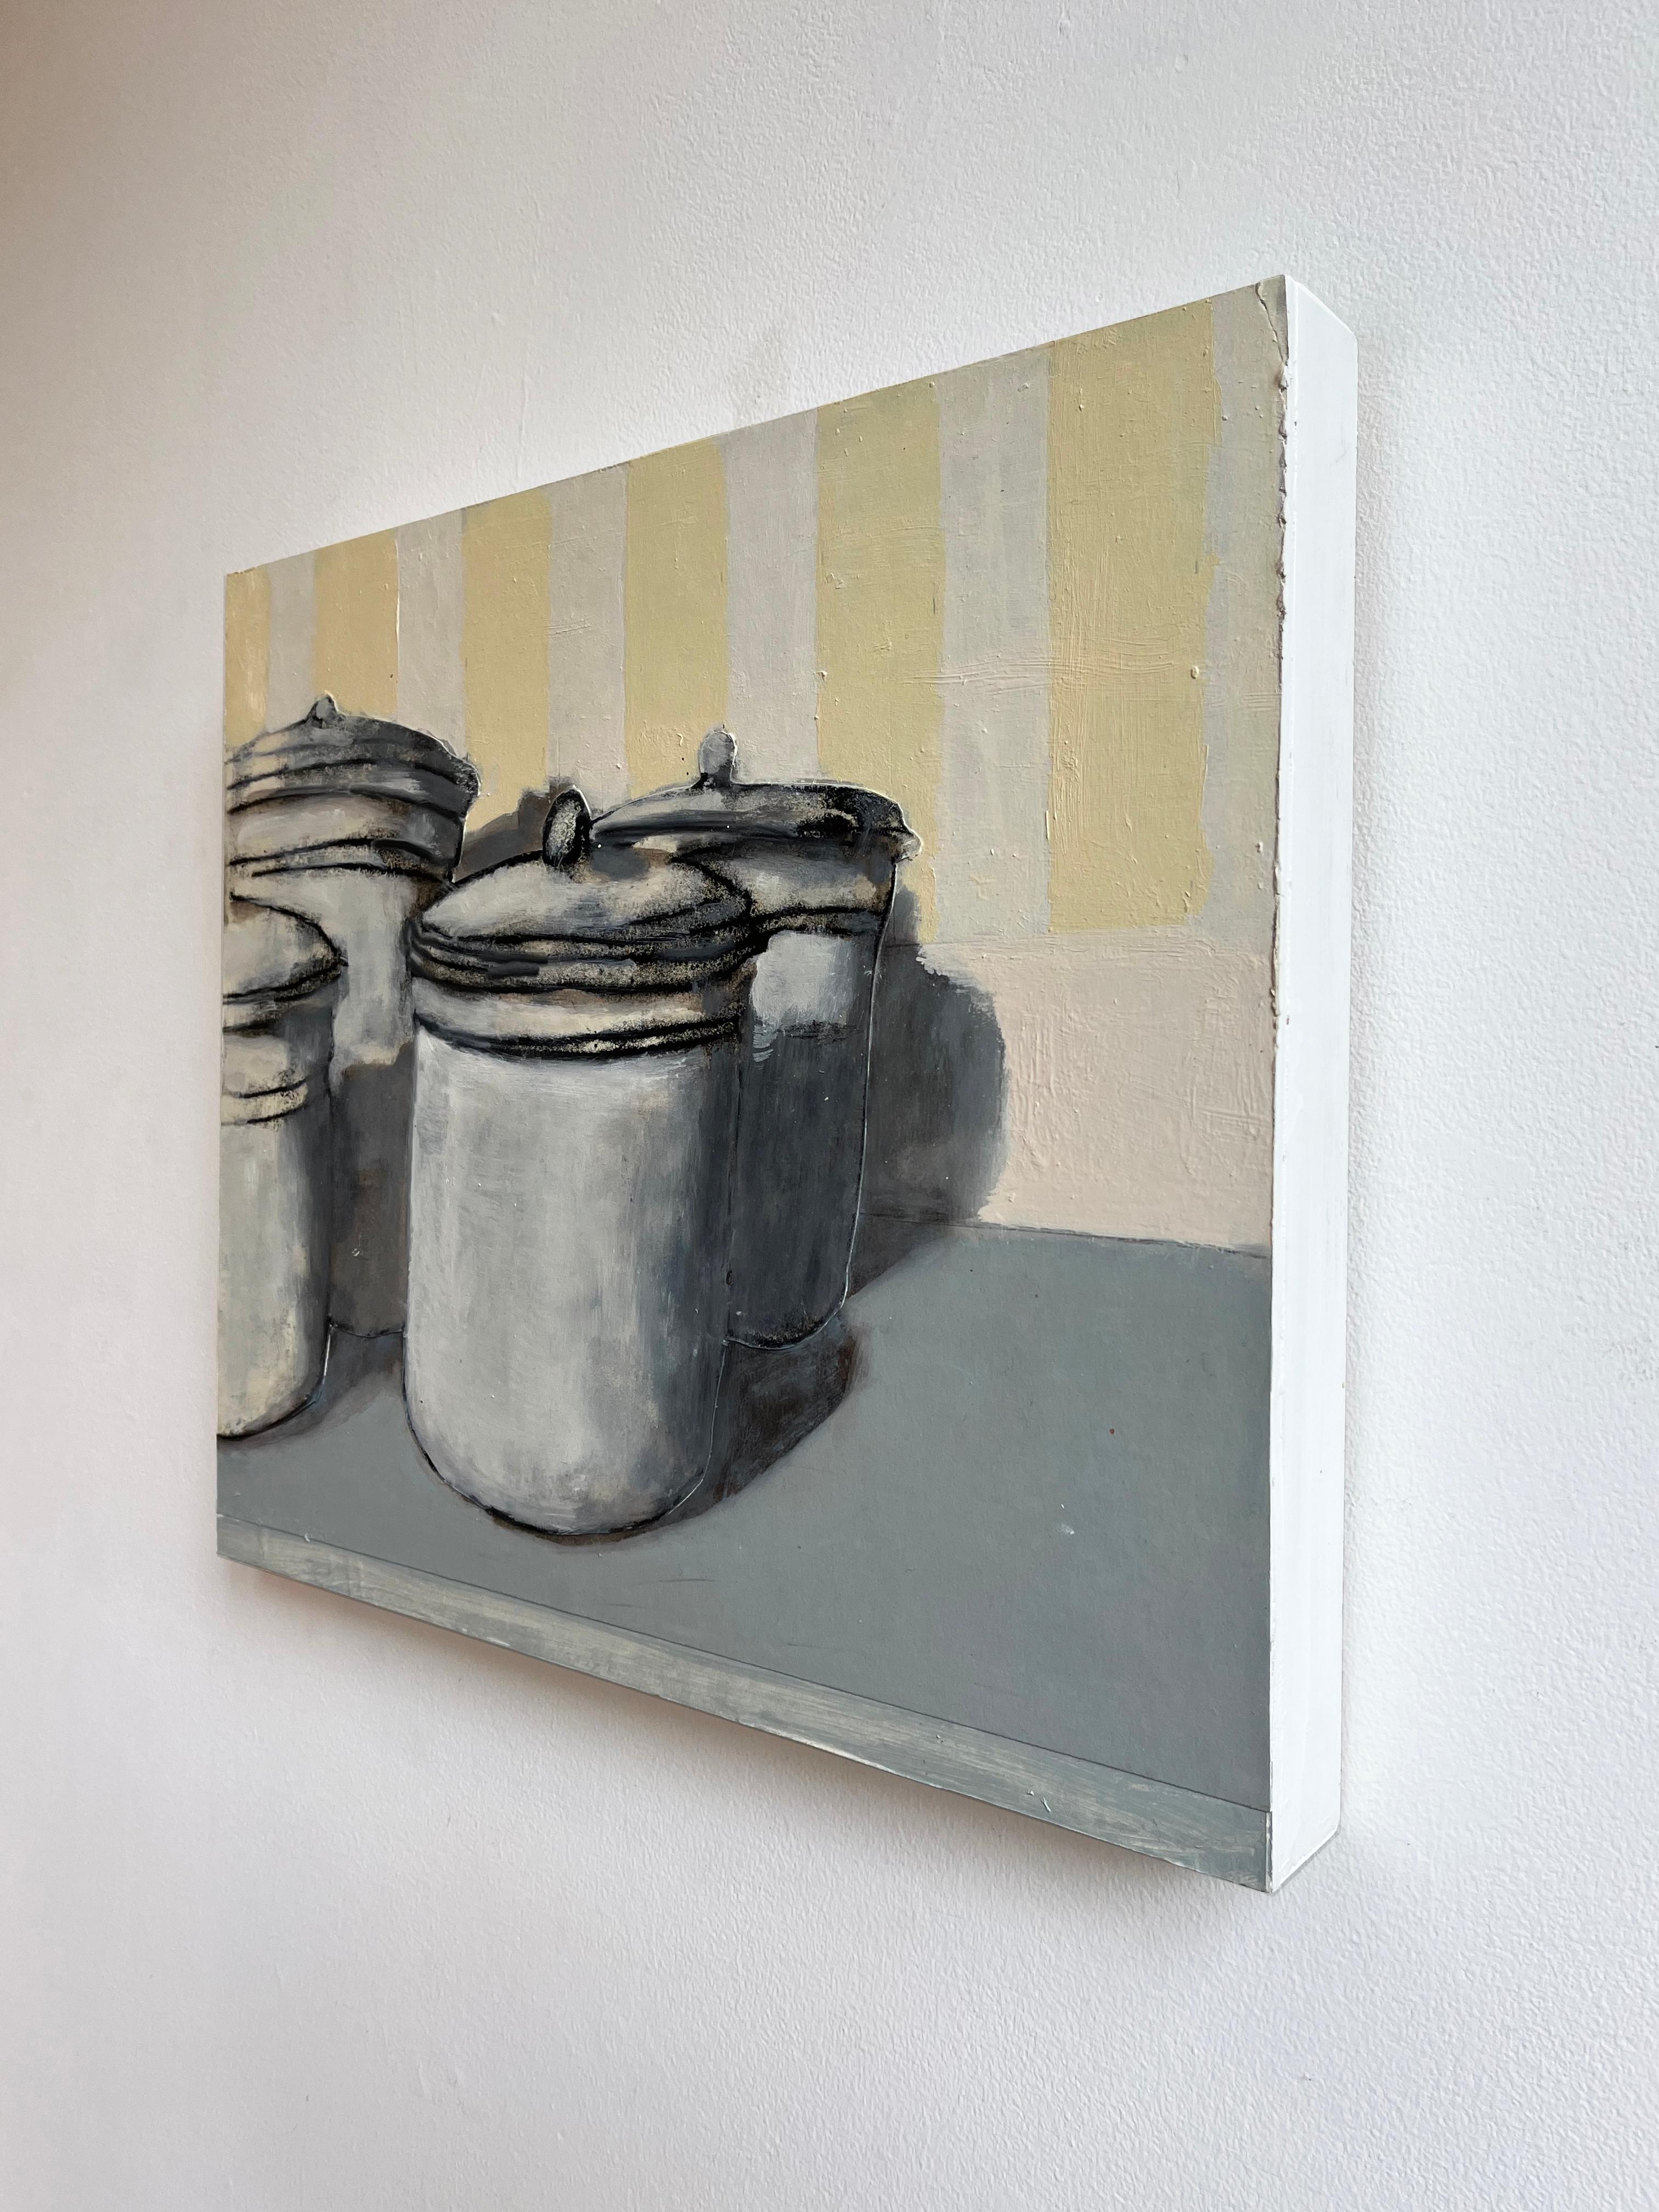 Mehl, Zucker, Maismehl, Tee (Contemporary Still Life Painting of Kitchen Jars)
Zeitgenössisches Stillleben in Monotypie, Öl und Collage auf Tafelbild, das eine Sammlung von Vorratsdosen vor einem gelb-weiß gestreiften Hintergrund zeigt.
David